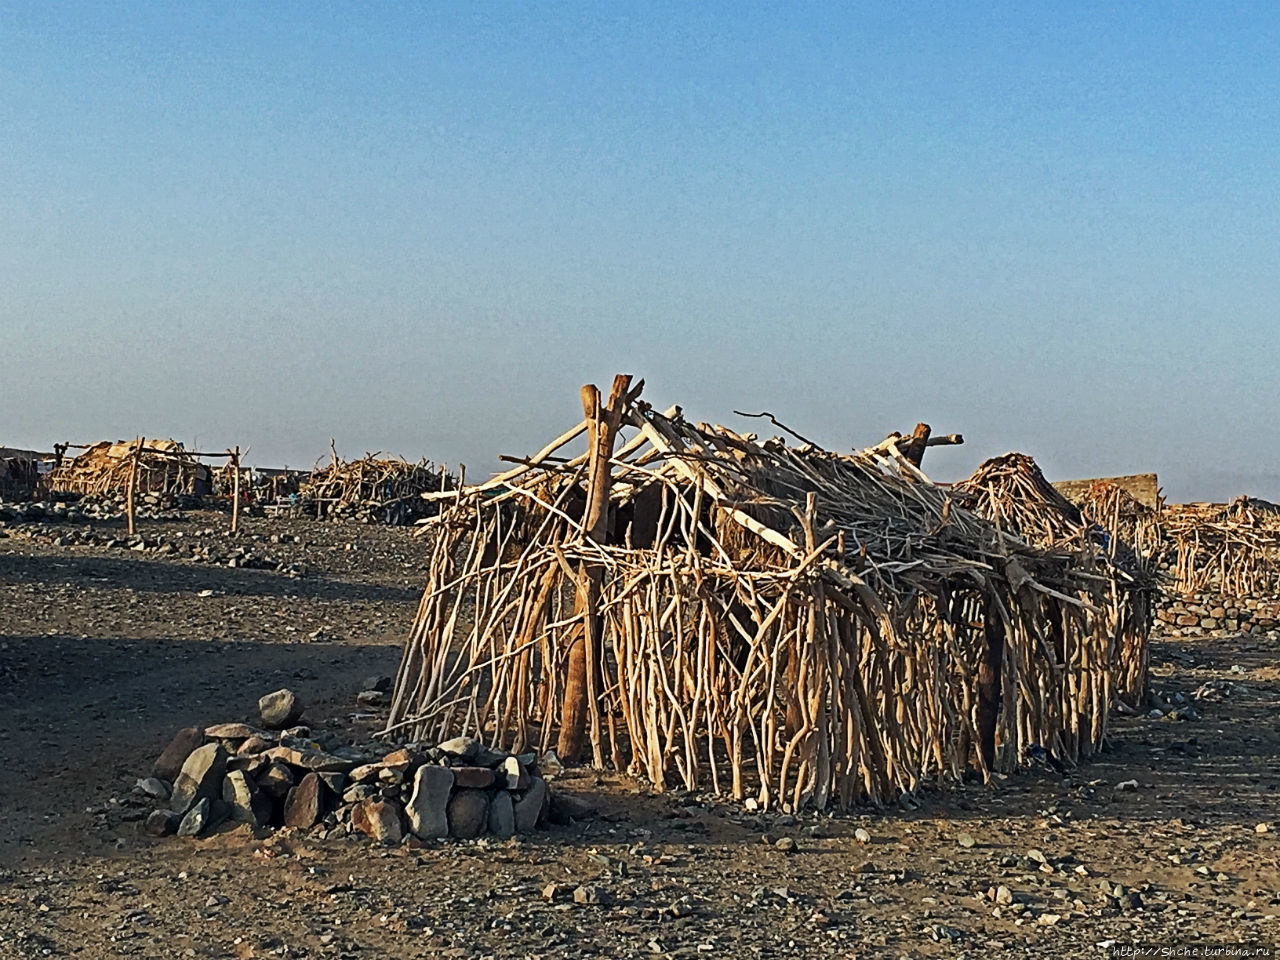 Хамед-Эла — жизнь там, где это практически невозможно Хамед-Эла, Эфиопия